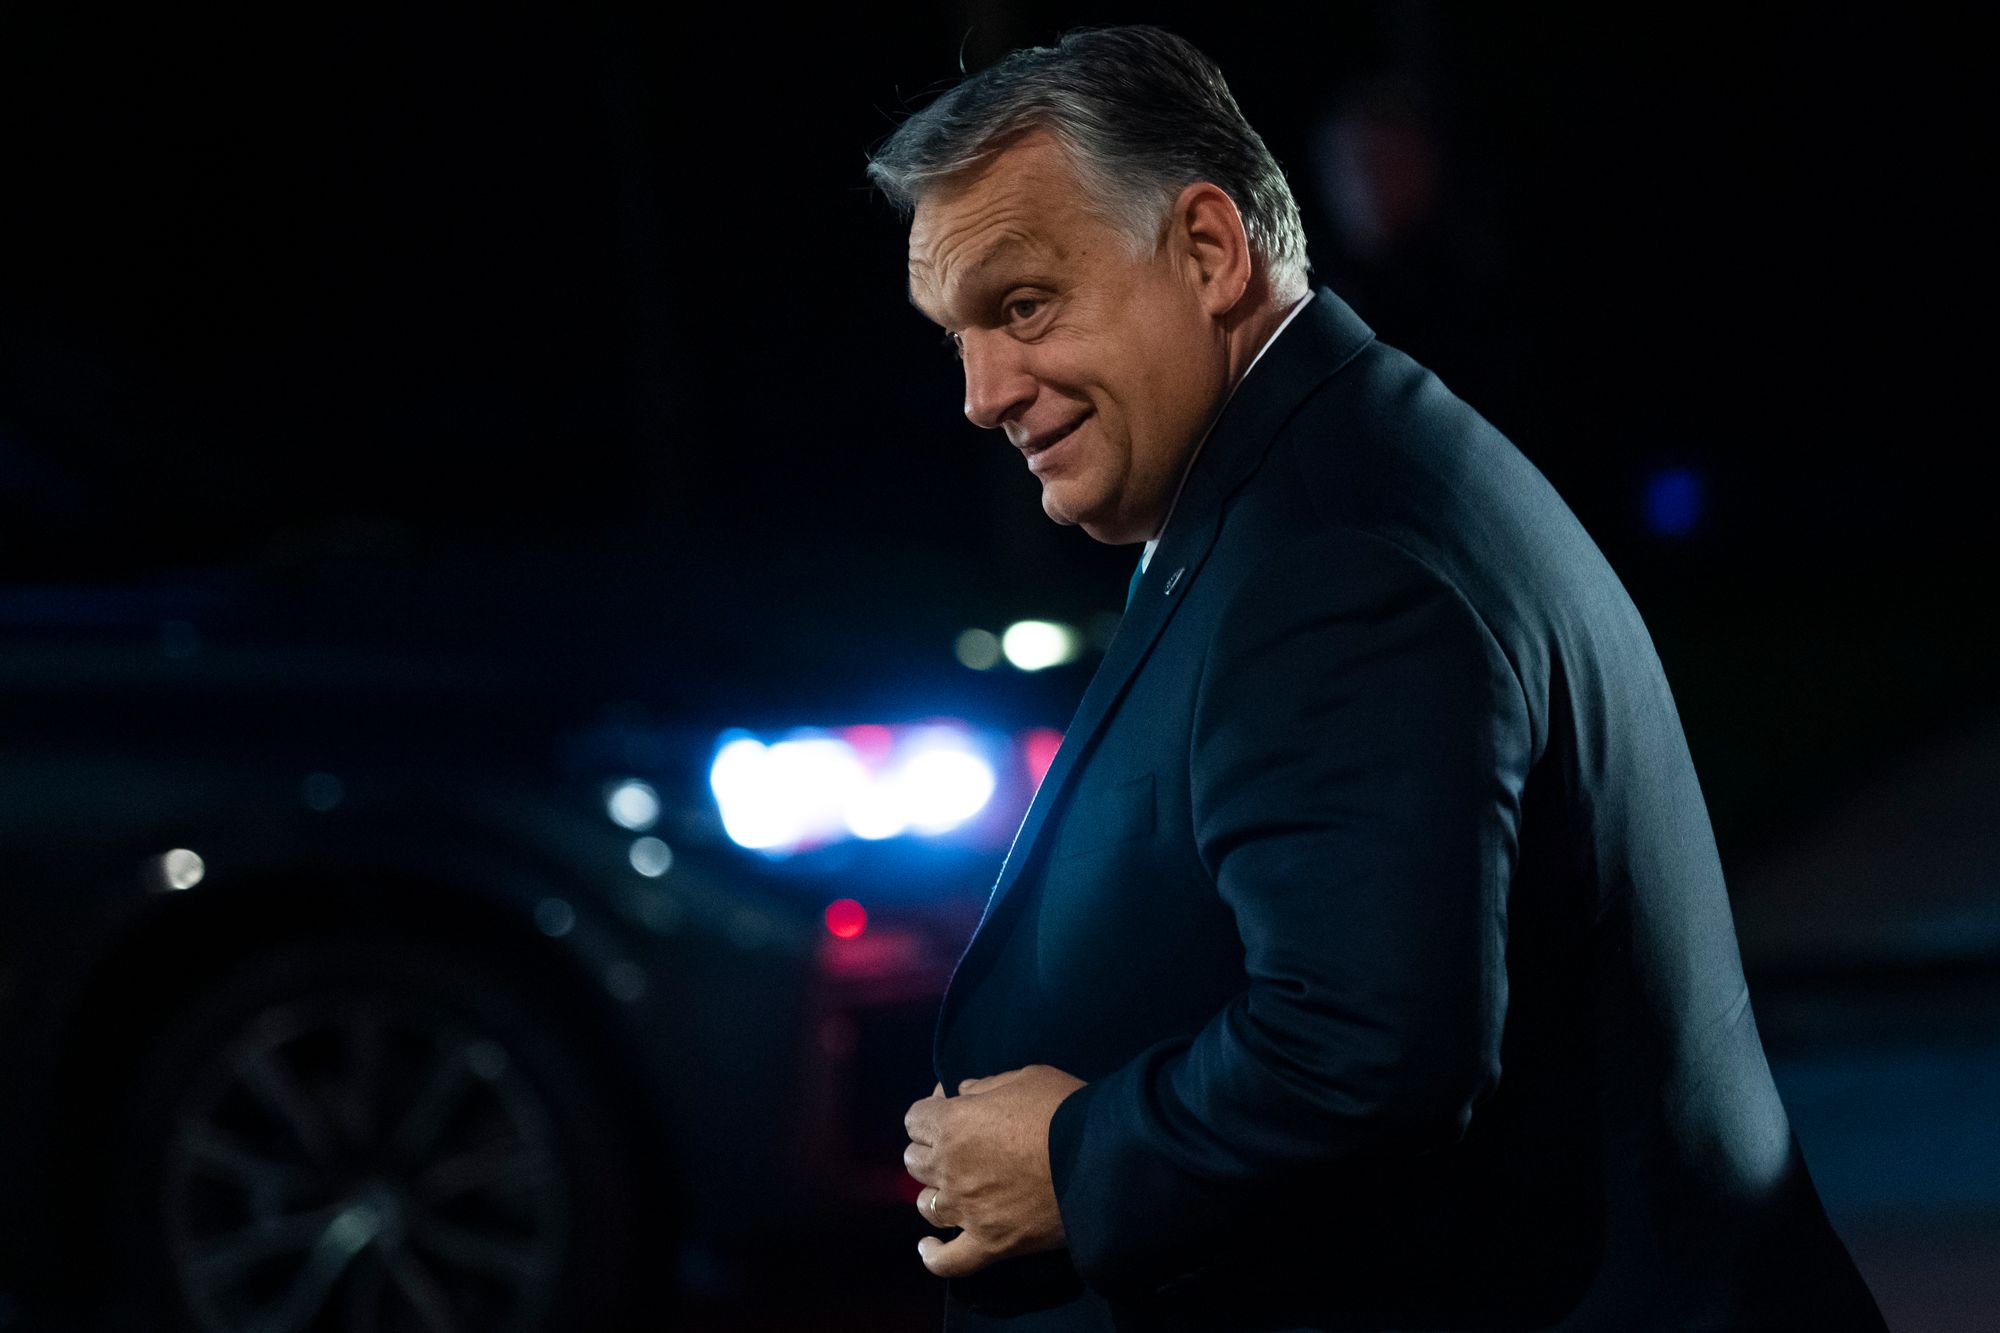 Ministerstvo zahraničných vecí si predvoláva maďarského veľvyslanca ohľadom Orbanových vyjadrení o Slovensku